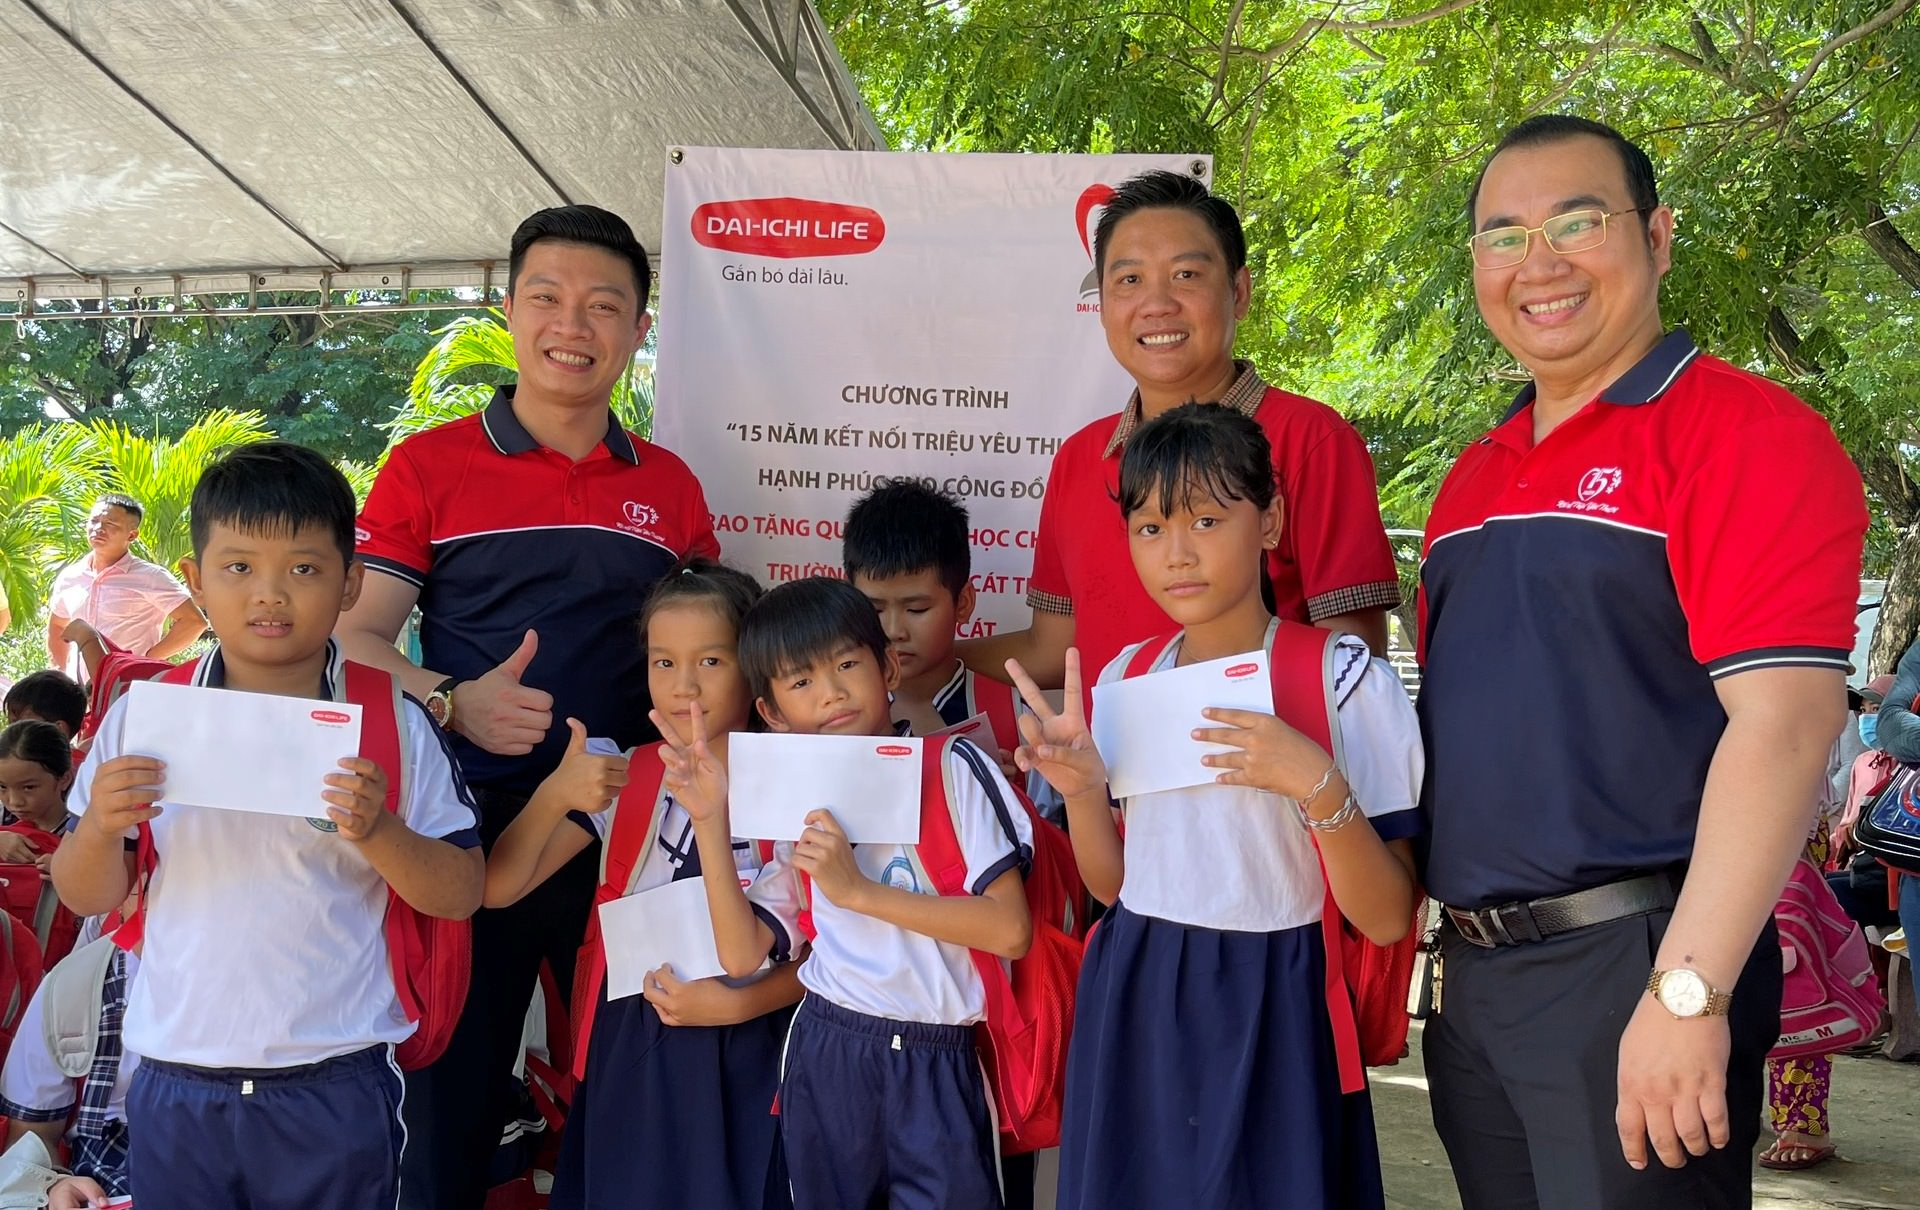 Dai-ichi Life Việt Nam tặng quà khuyến học cho học sinh có hoàn cảnh khó khăn tại Bình Định và Đắk Lắk...